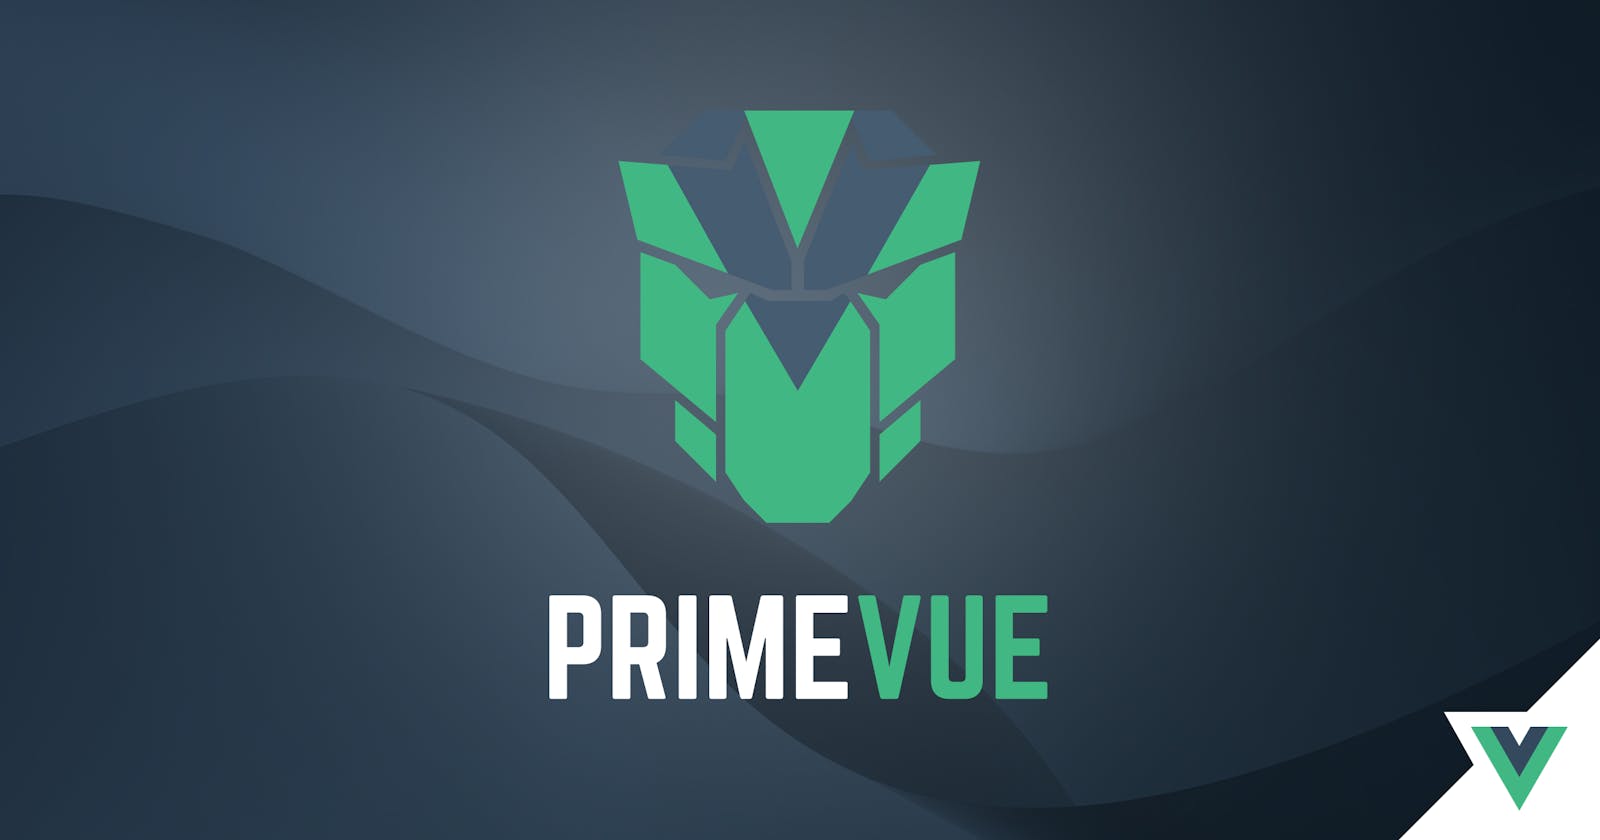 PrimeVue 3.5.0 is ready for PrimeTime